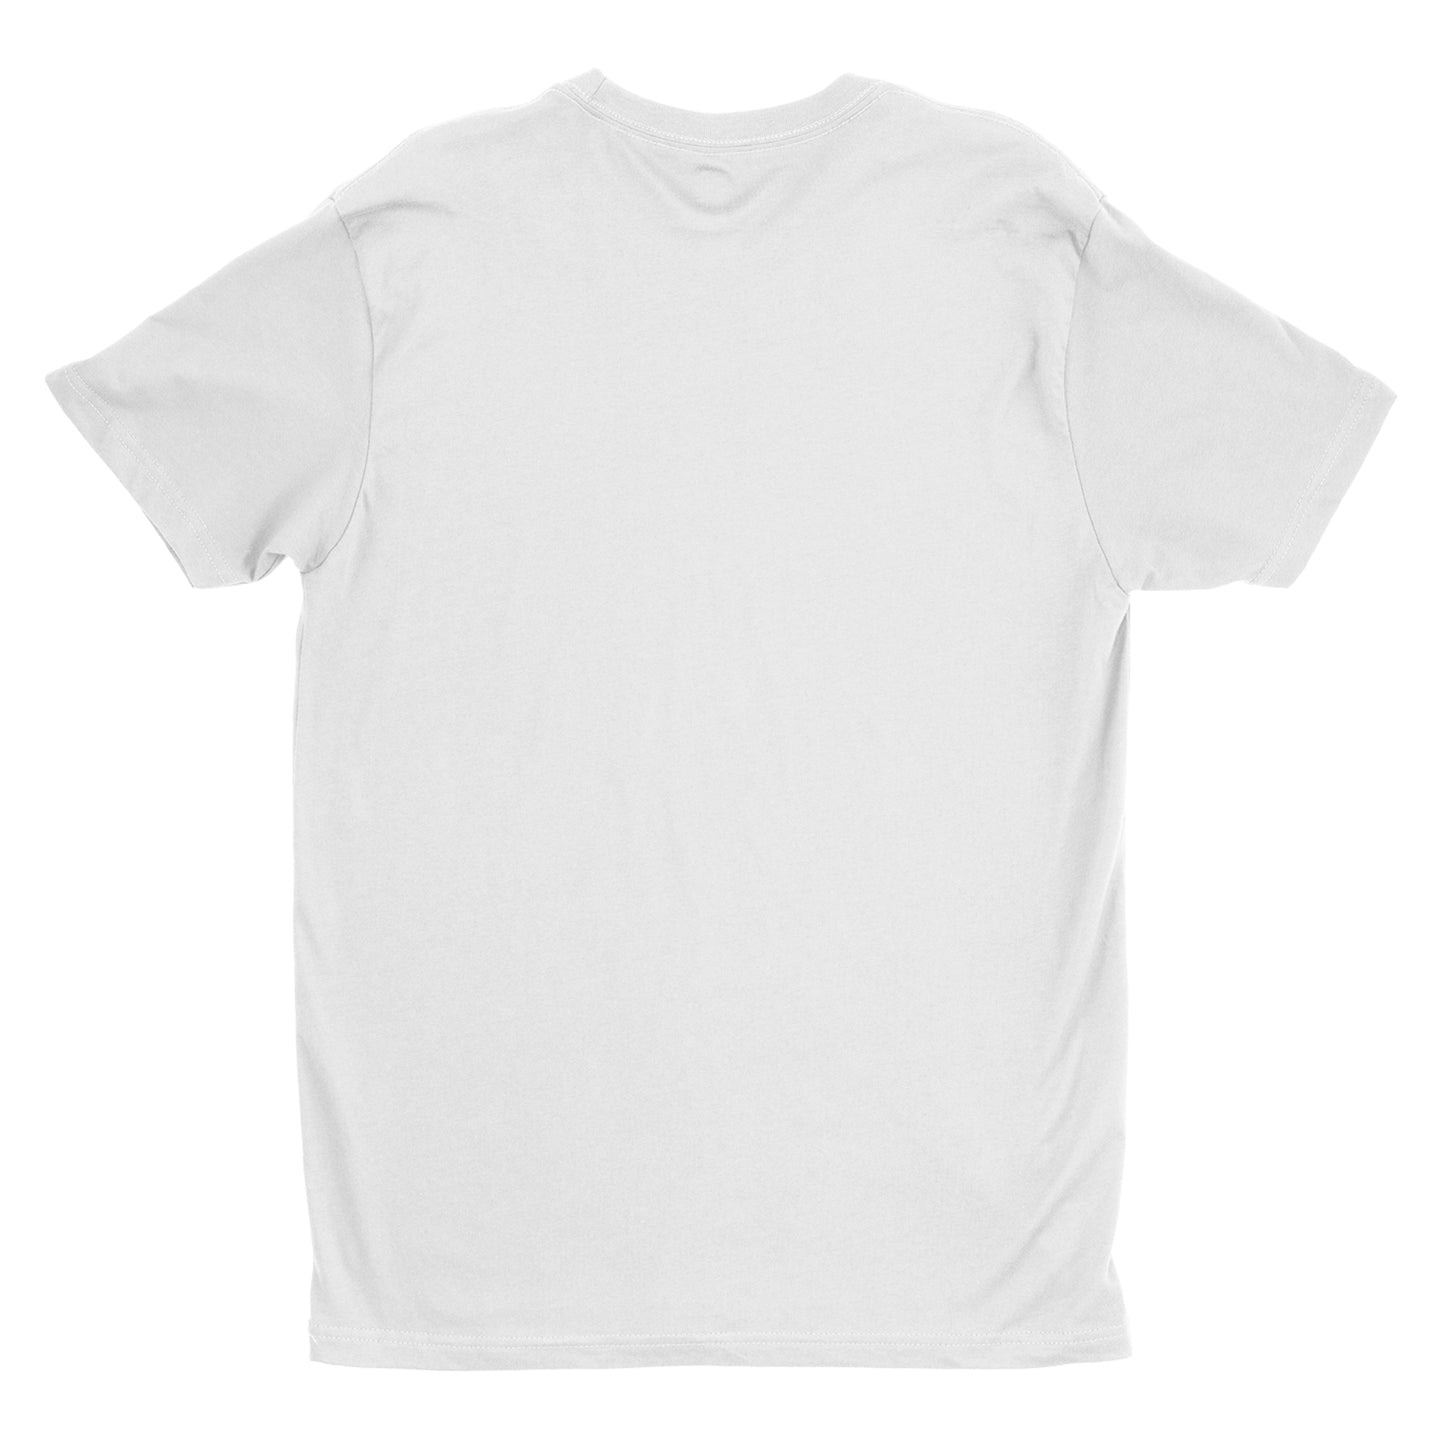 tyler, yunus, & weston - MMA midfield - white t-shirt